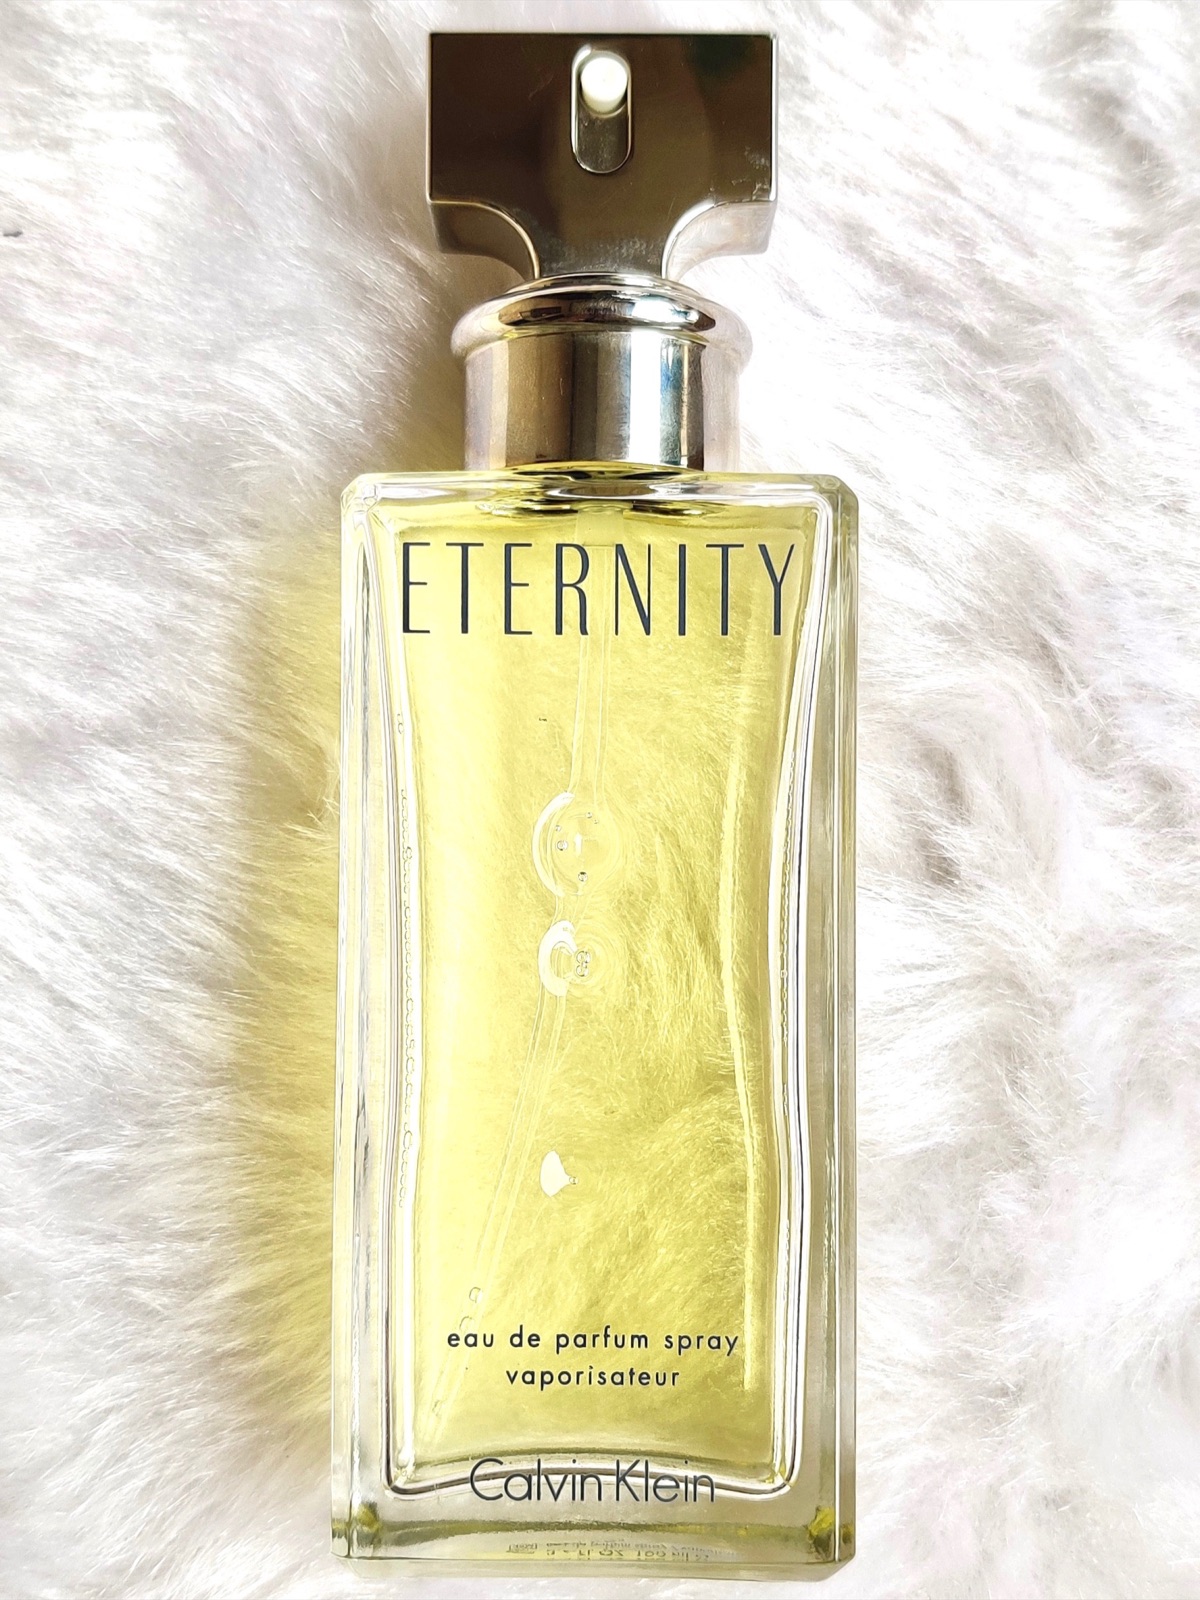 Eternaty Perfume For Women